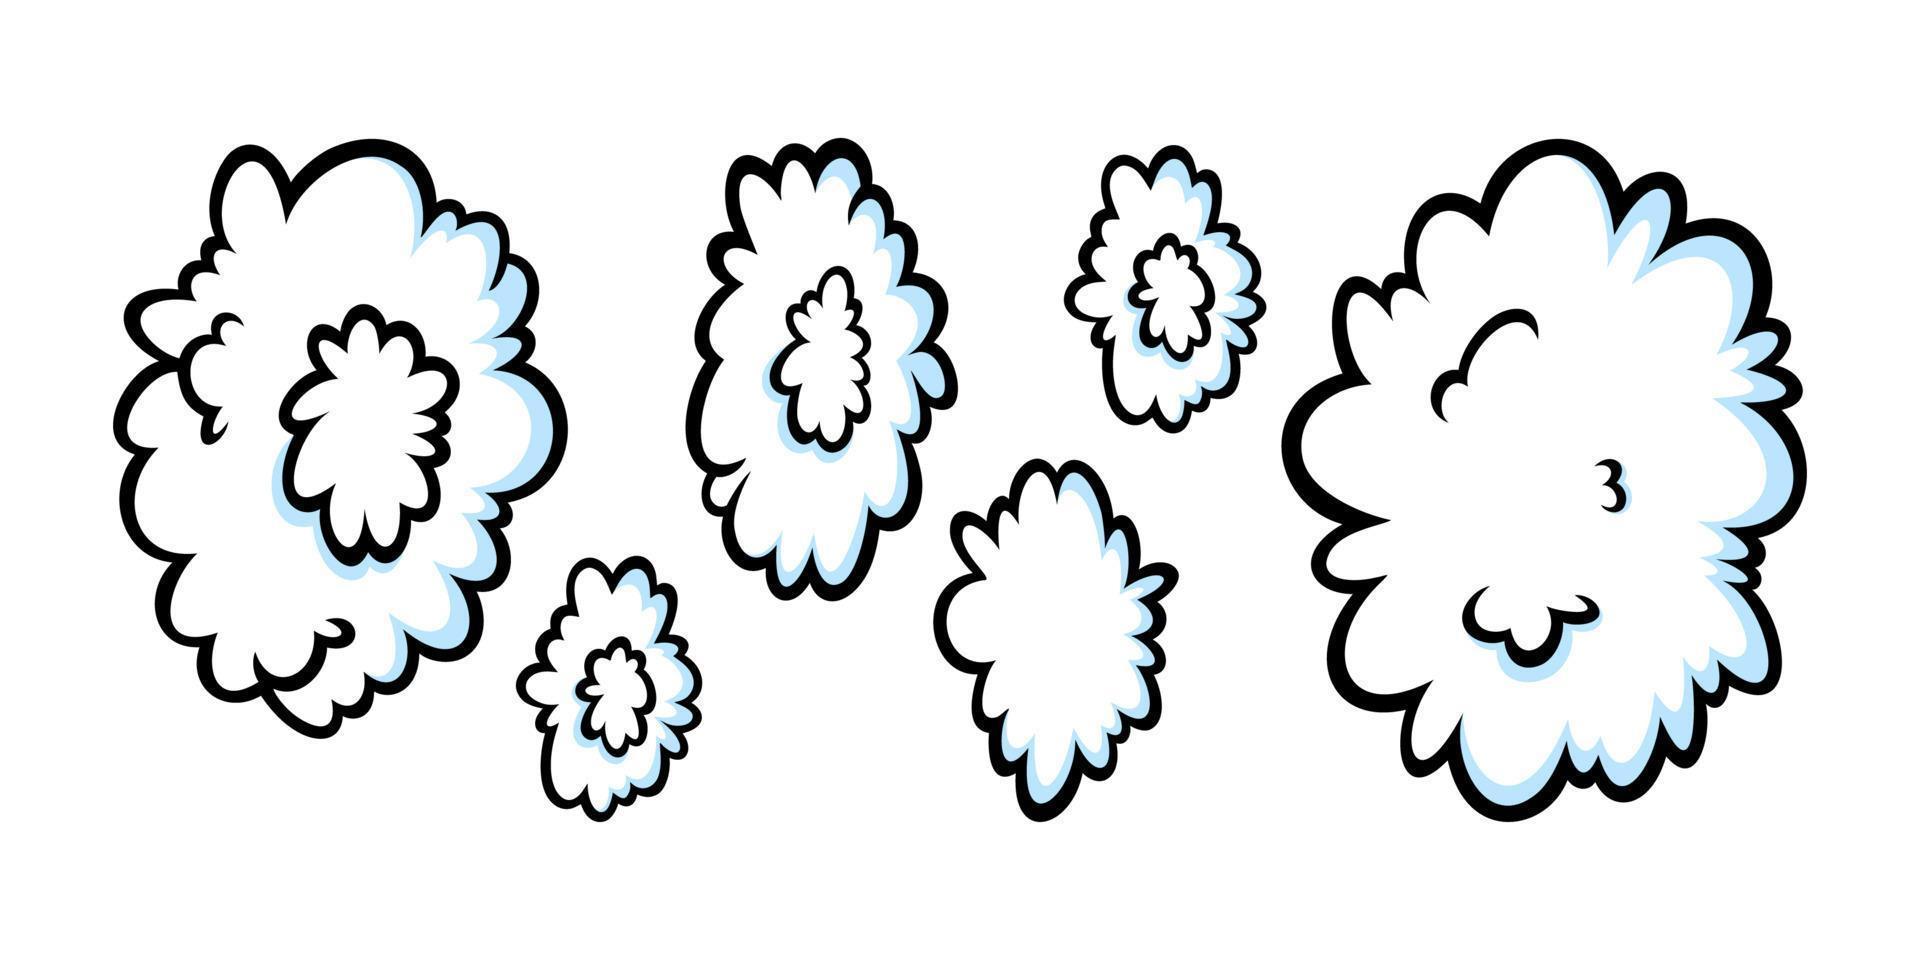 anéis de vapor em estilo cômico. crescente fileira de nuvens redondas de vapor ou fumaça para charuto, cigarro ou movimento rápido. ilustração vetorial vetor